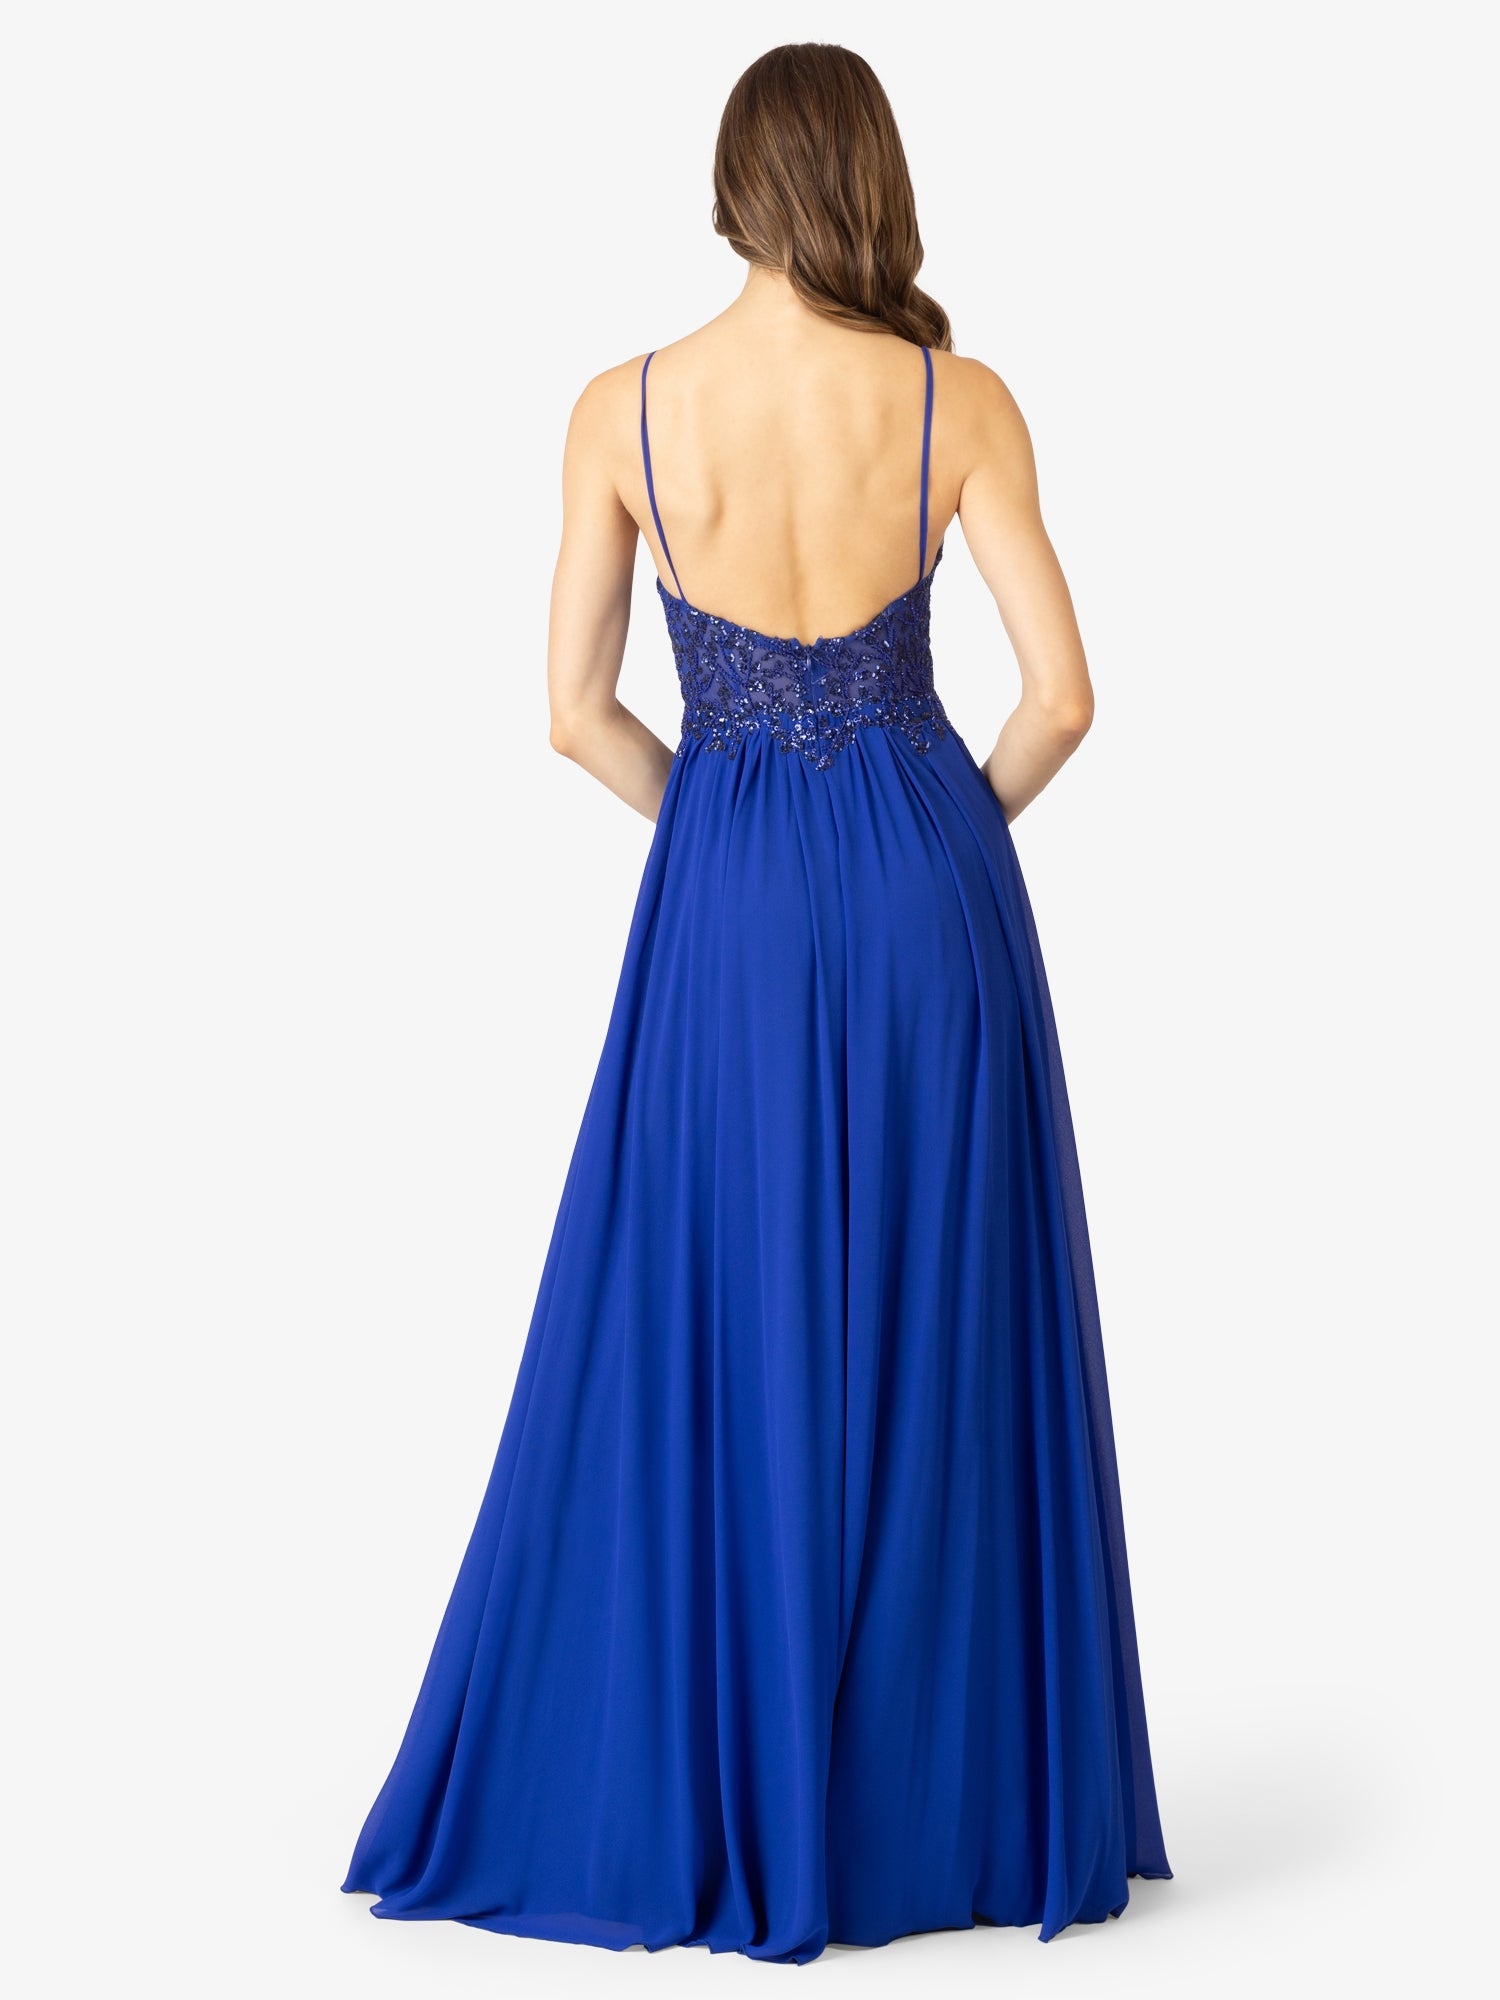 APART Abendkleider mit Herzausschnitt vorne und Rückenausschnitt hinten | royalblau